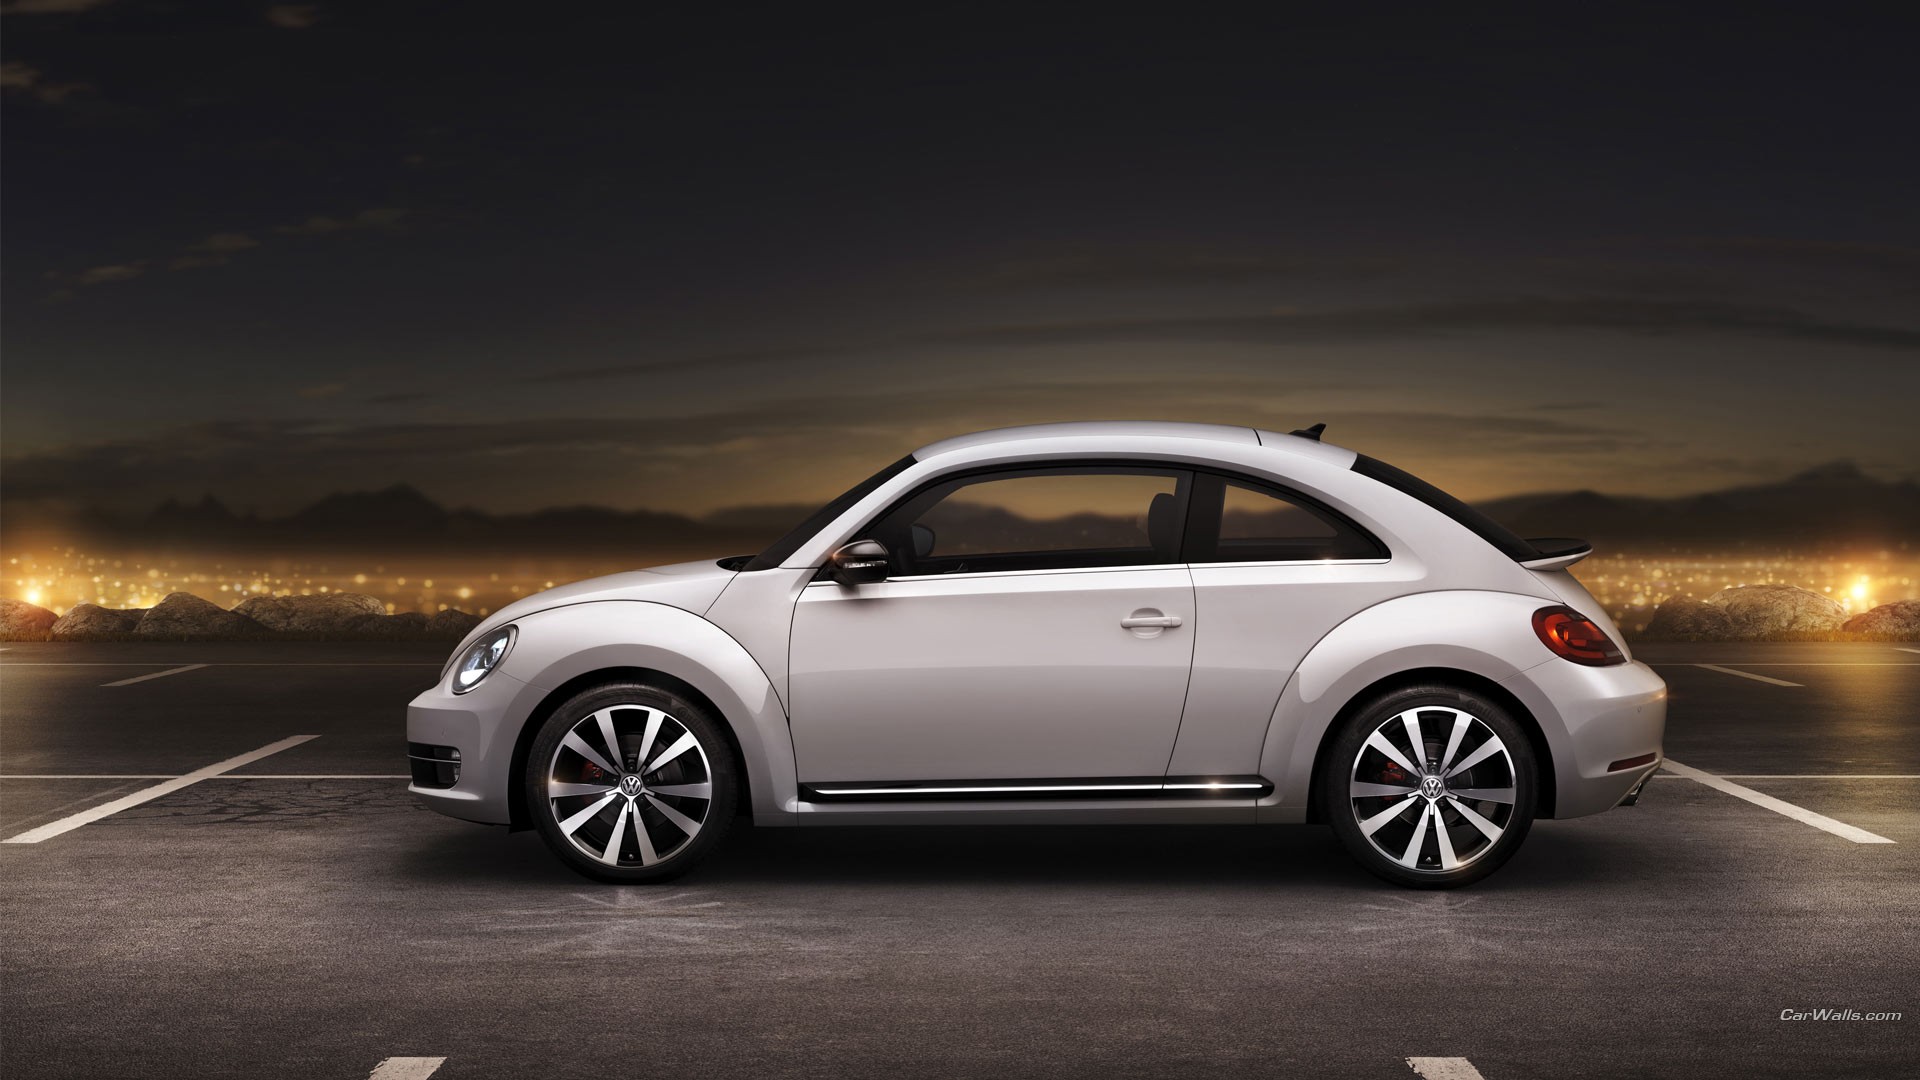 Vehicles 2012 Volkswagen Beetle HD Wallpaper | Background Image